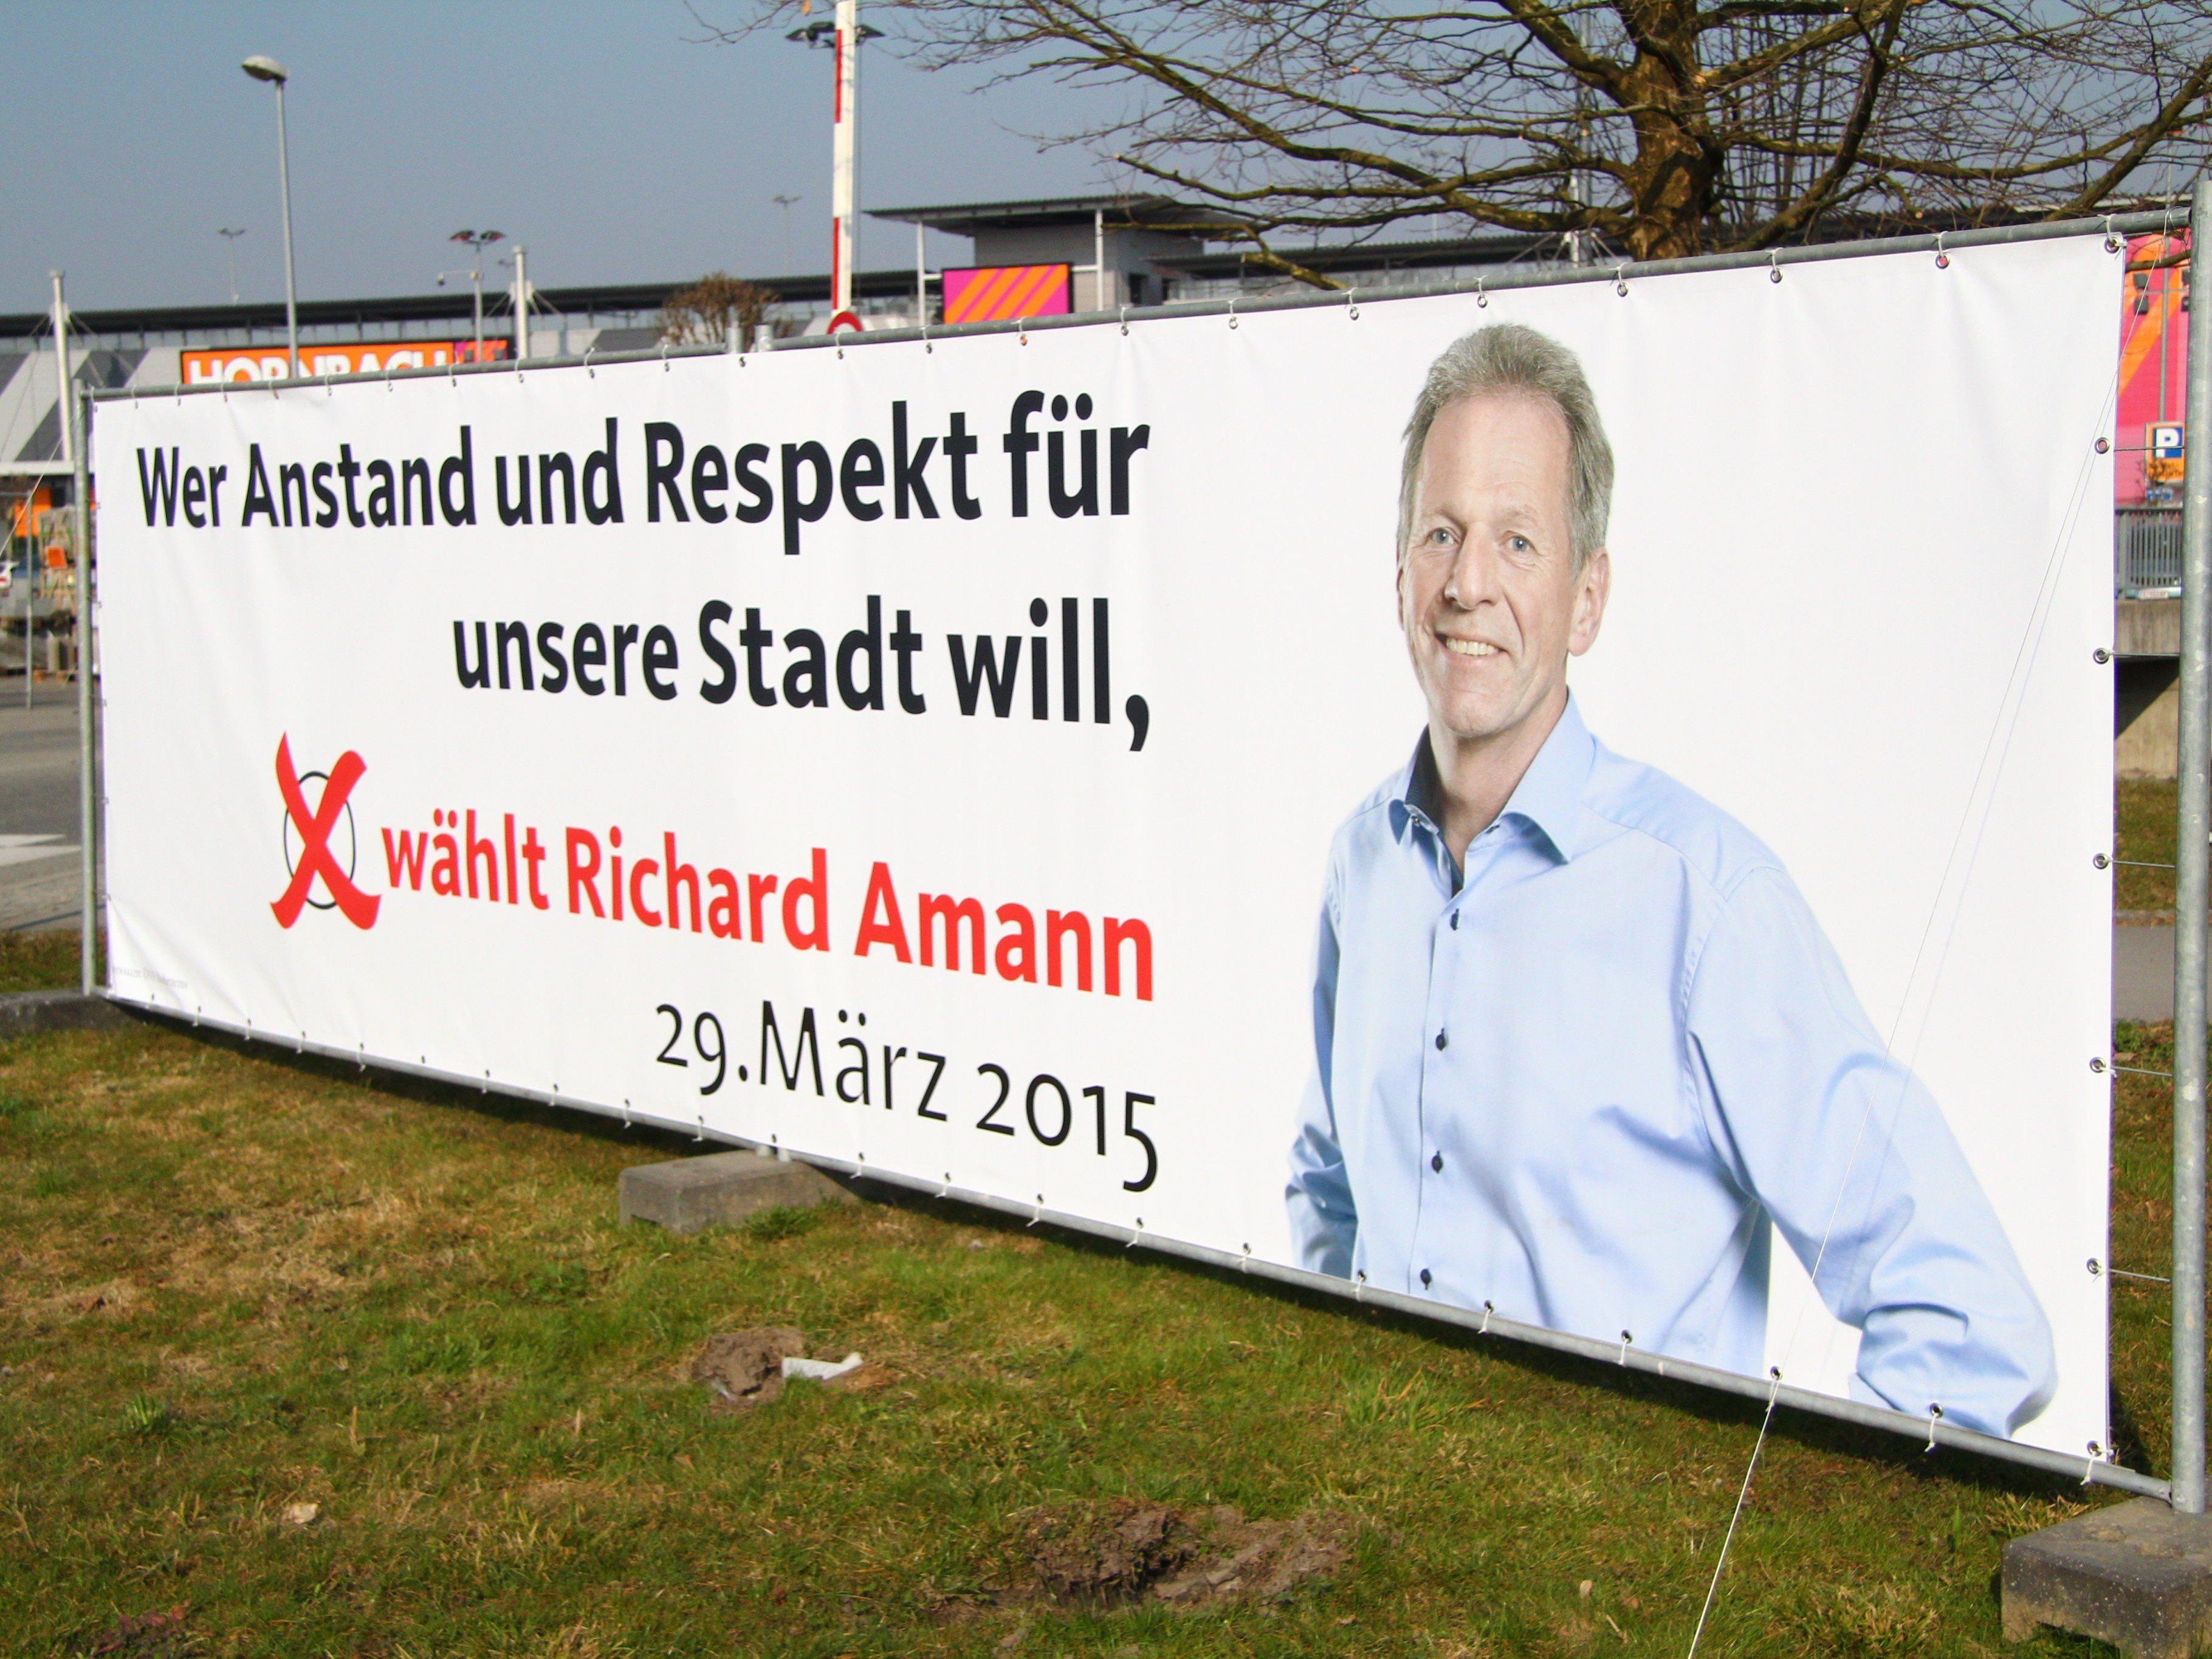 So wirbt die ÖVP in Hohenems für den amtierenden Bürgermeister - aber nicht nur.